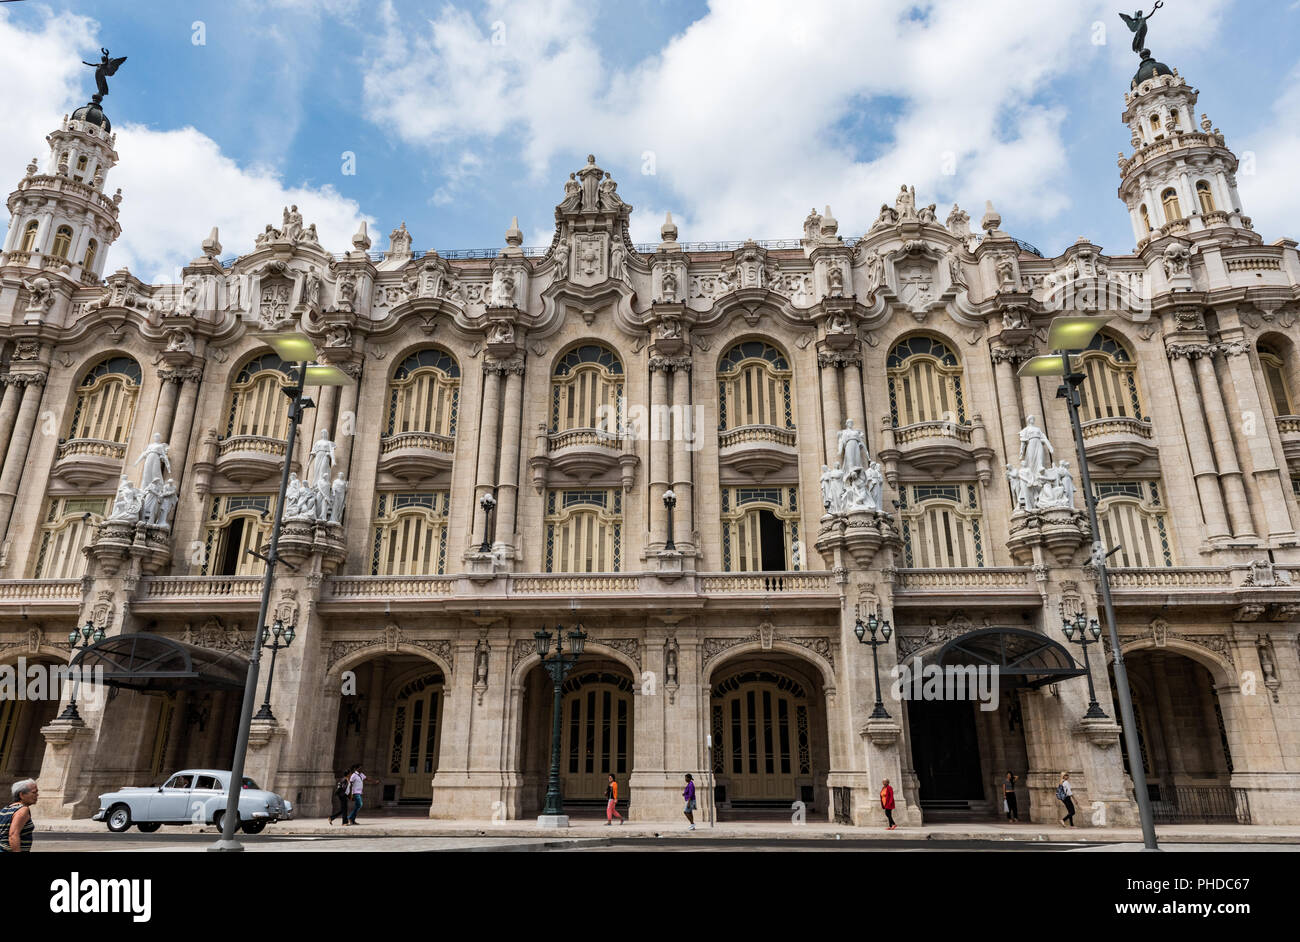 Gran Teatro de La Habana in Havana, Cuba has hosted the greatest opera singers and ballet dancers. Stock Photo